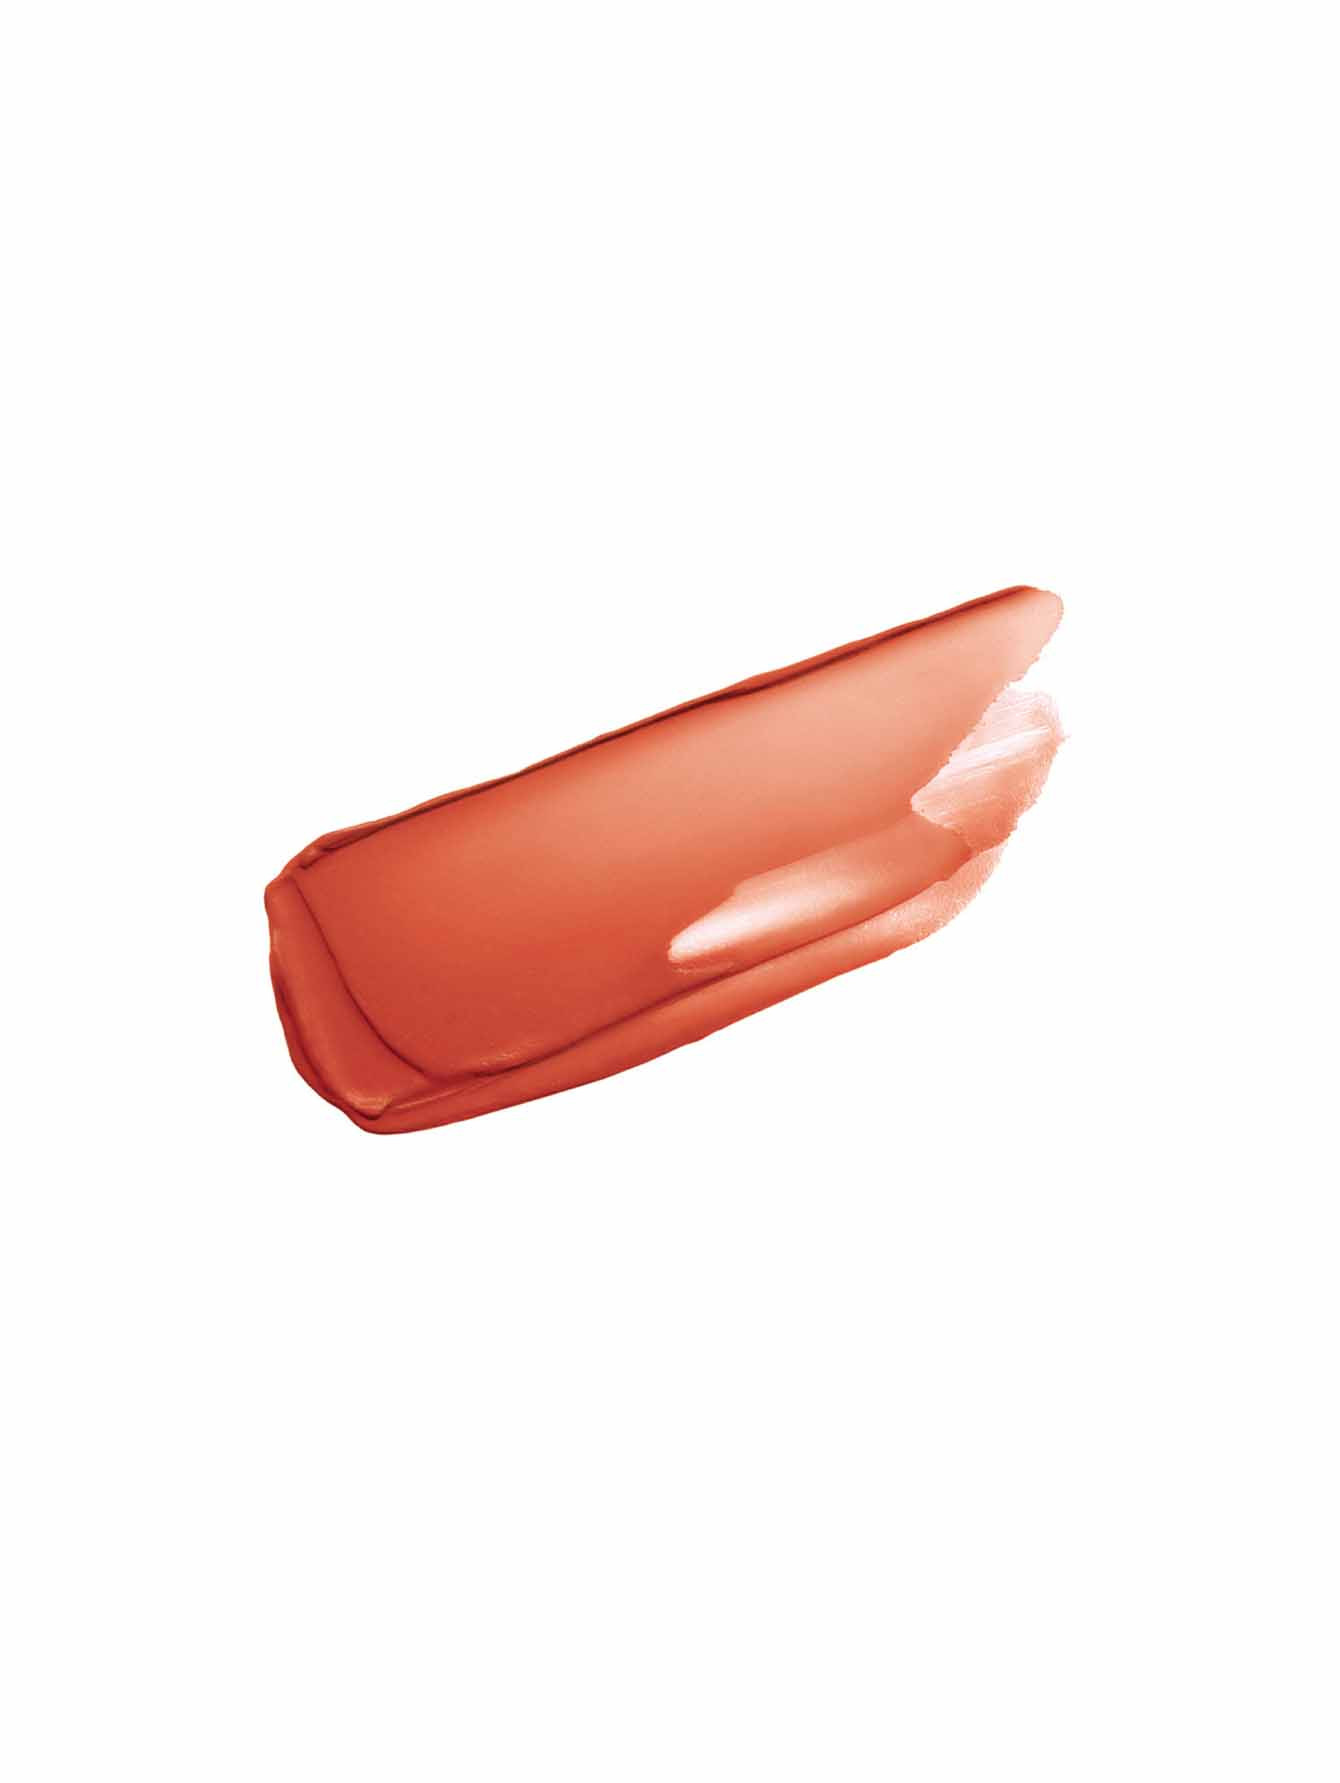 Le Rouge Sheer Velvet Легкая увлажняющая губная помада с мягким матовым финишем, без футляра - Обтравка1